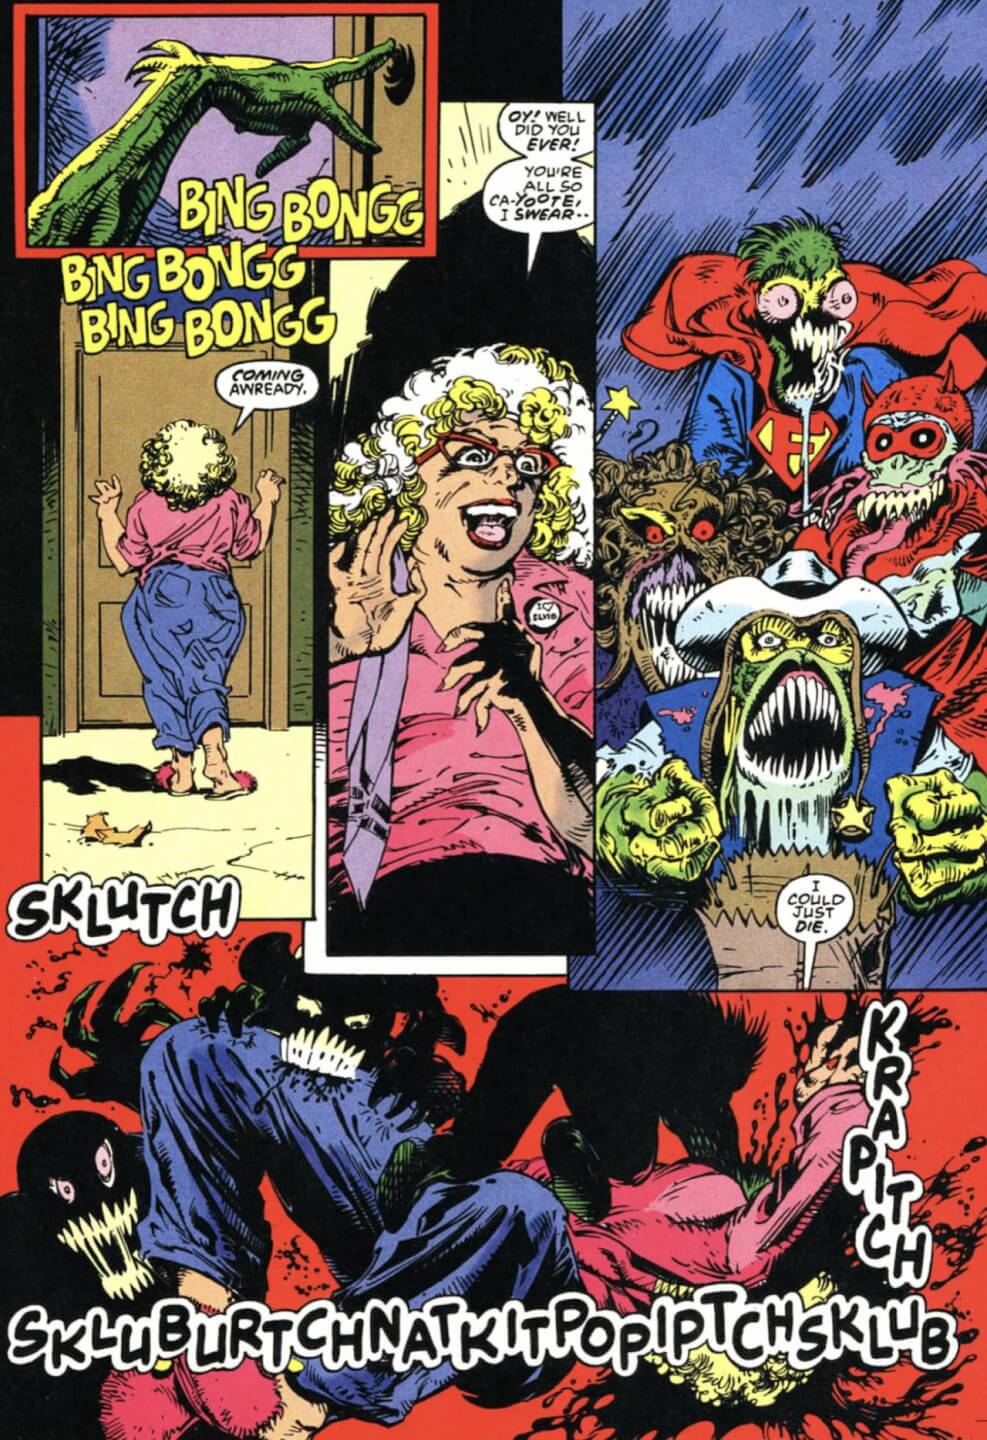 Sablexxx - SIEGE OF DARKNESS: Ghost Rider Universe Event (1993-1994): Darkhold series  ends; Johnny Blaze dies - Earth's Mightiest Blog